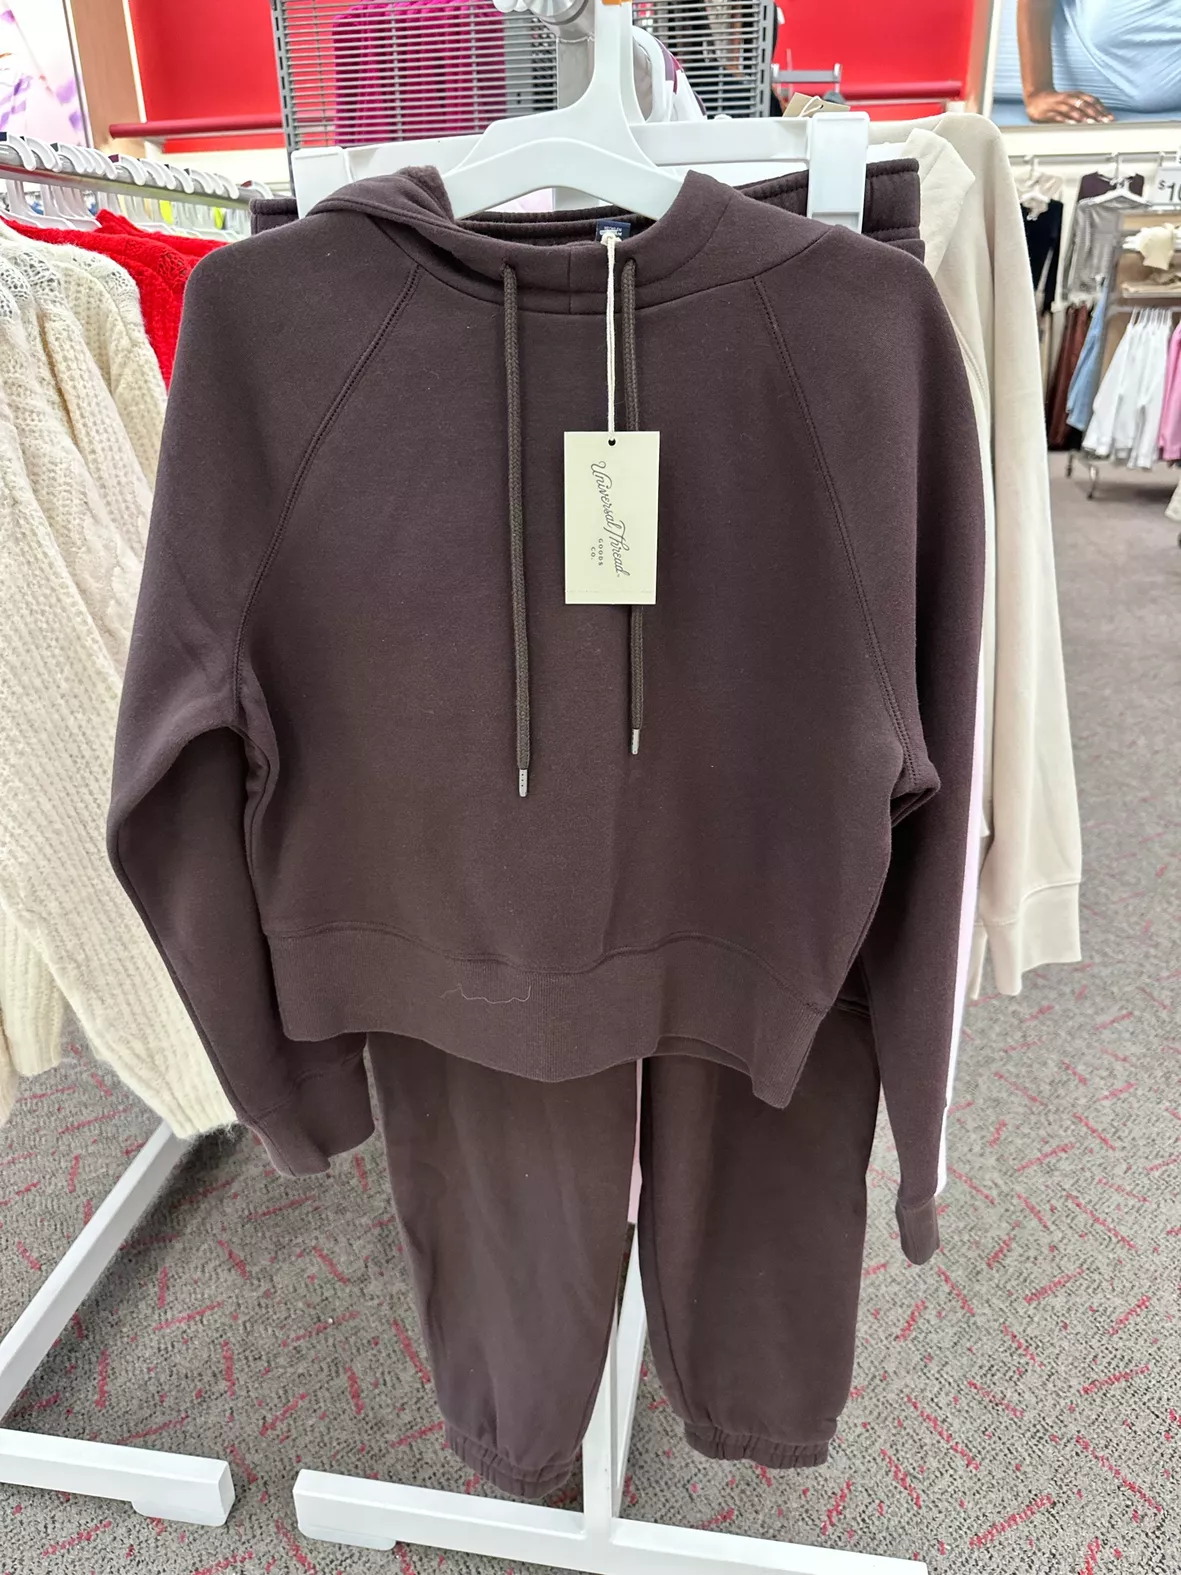 Women's Cropped Hoodie Sweatshirt … curated on LTK